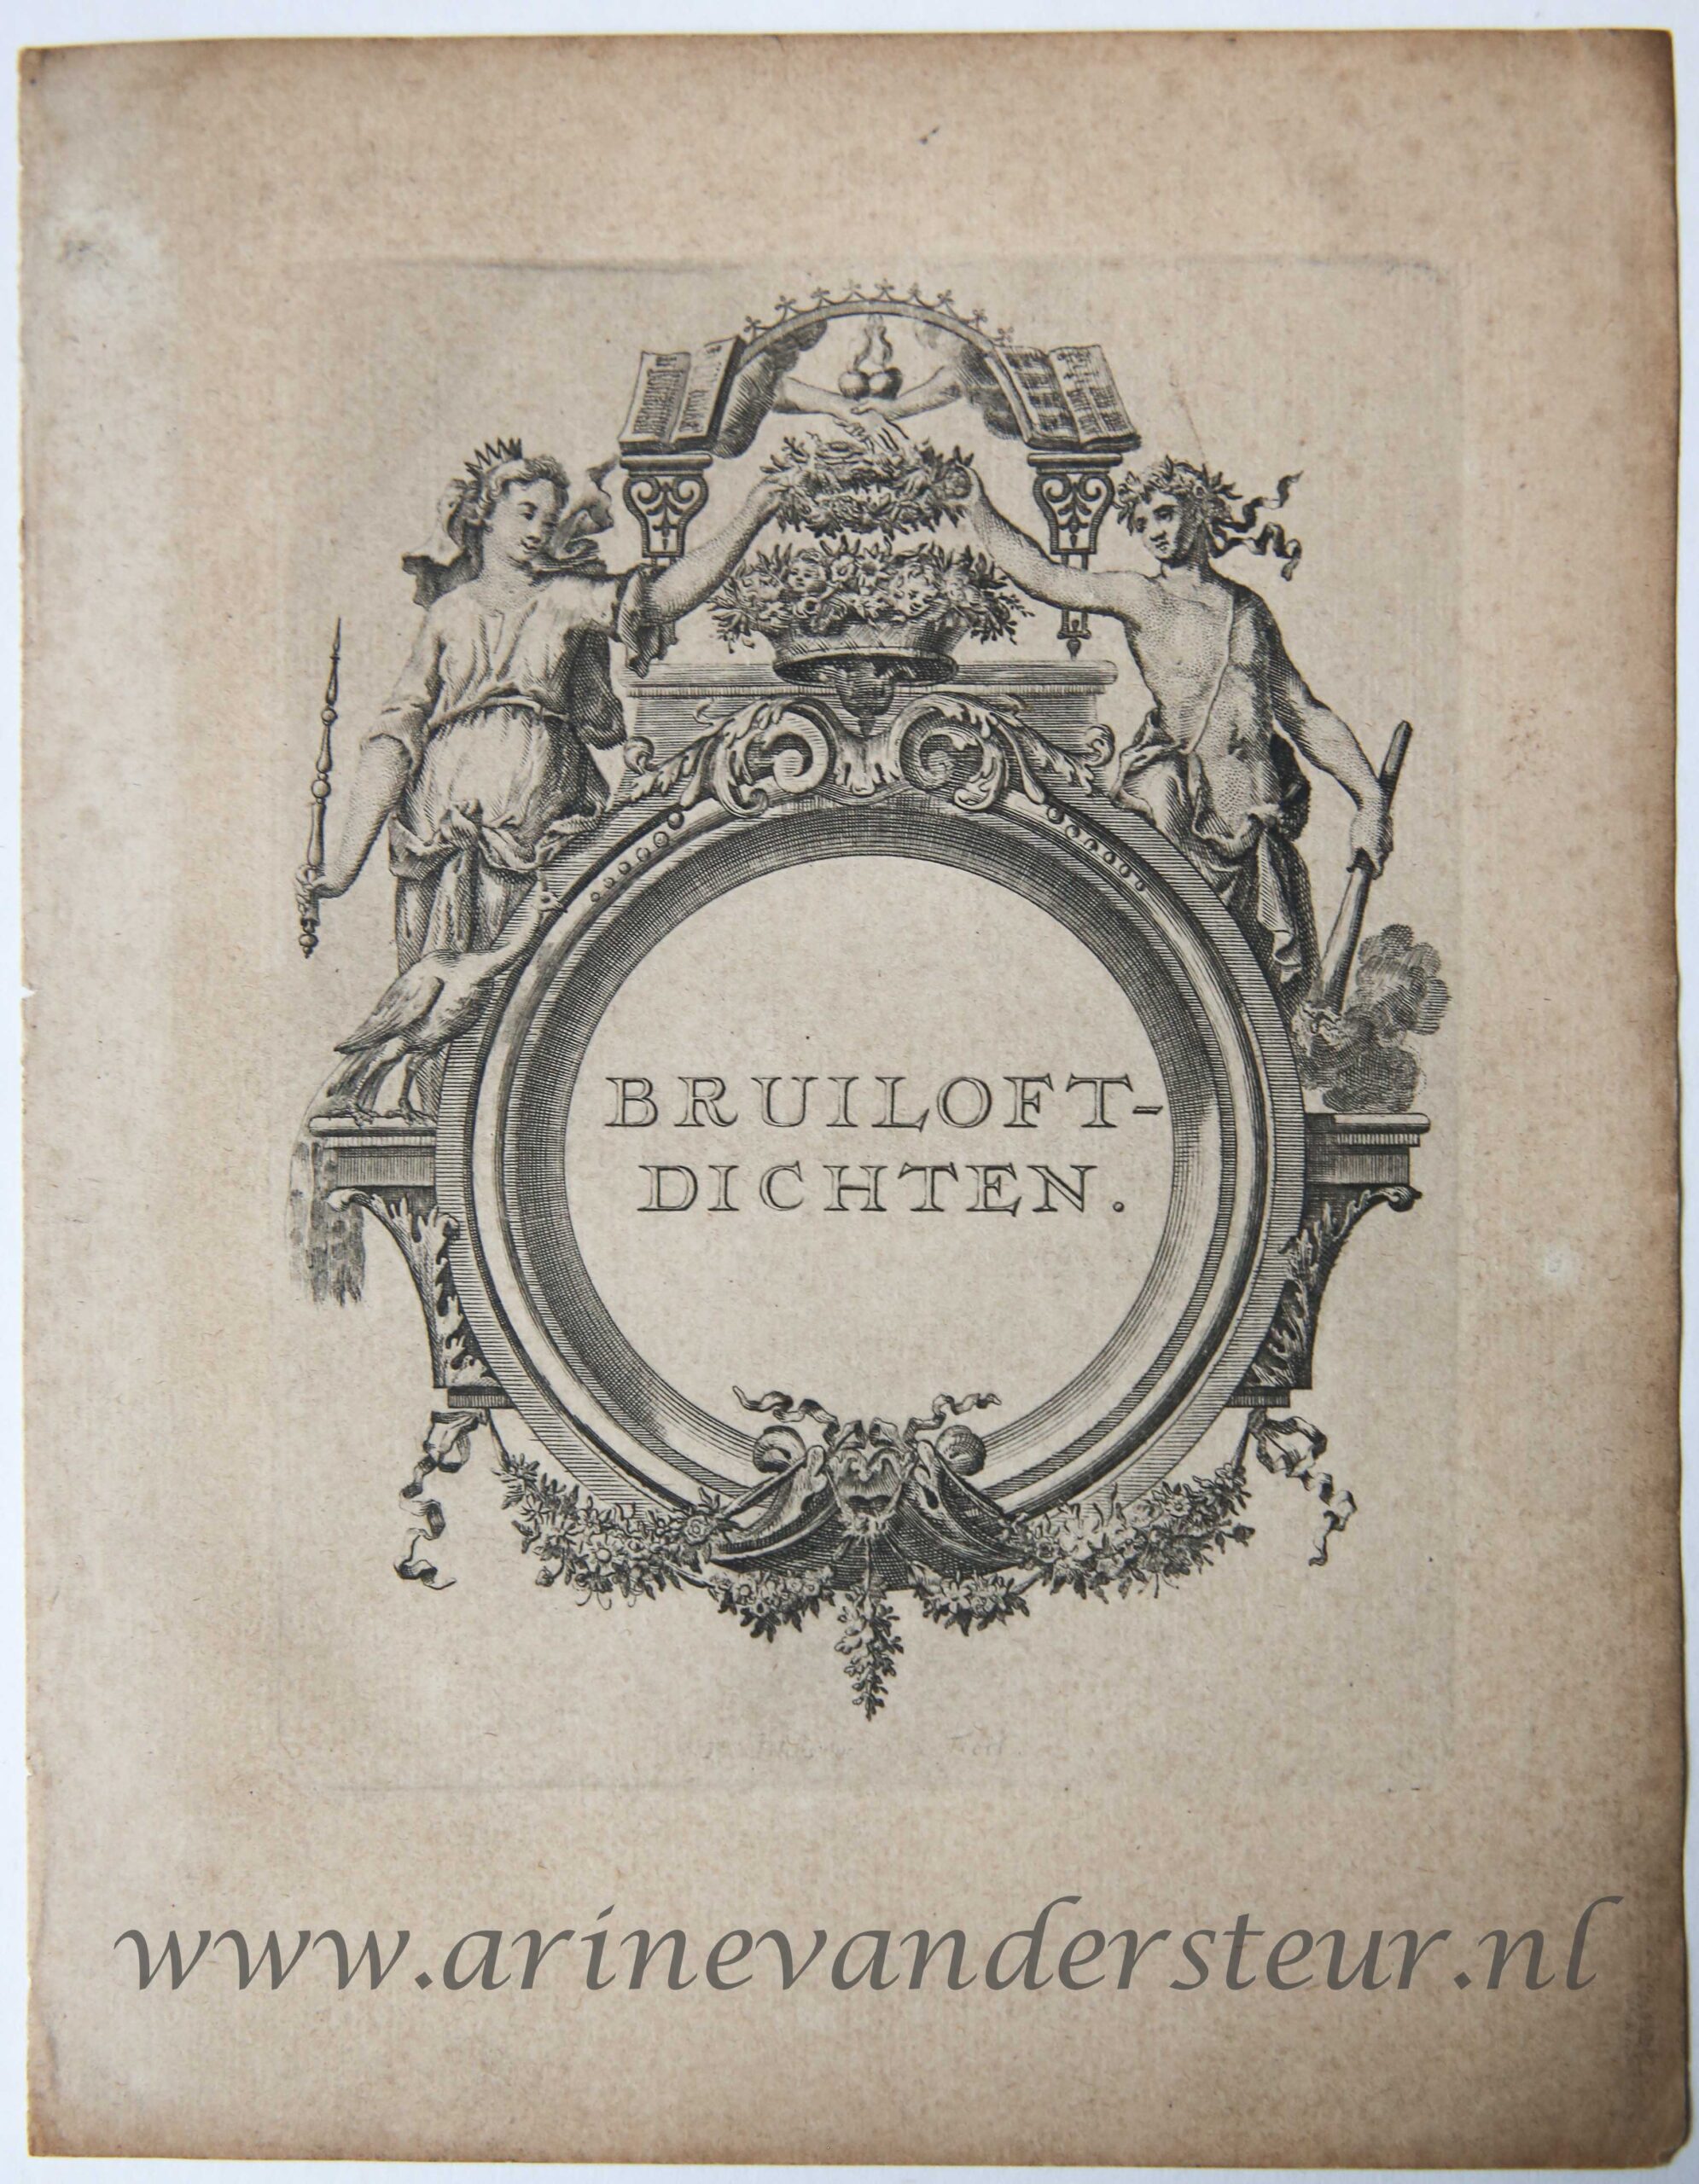 [Antique title page, ca. 1700] BRUILOFT-DICHTEN, published ca. 1700, 1 p.